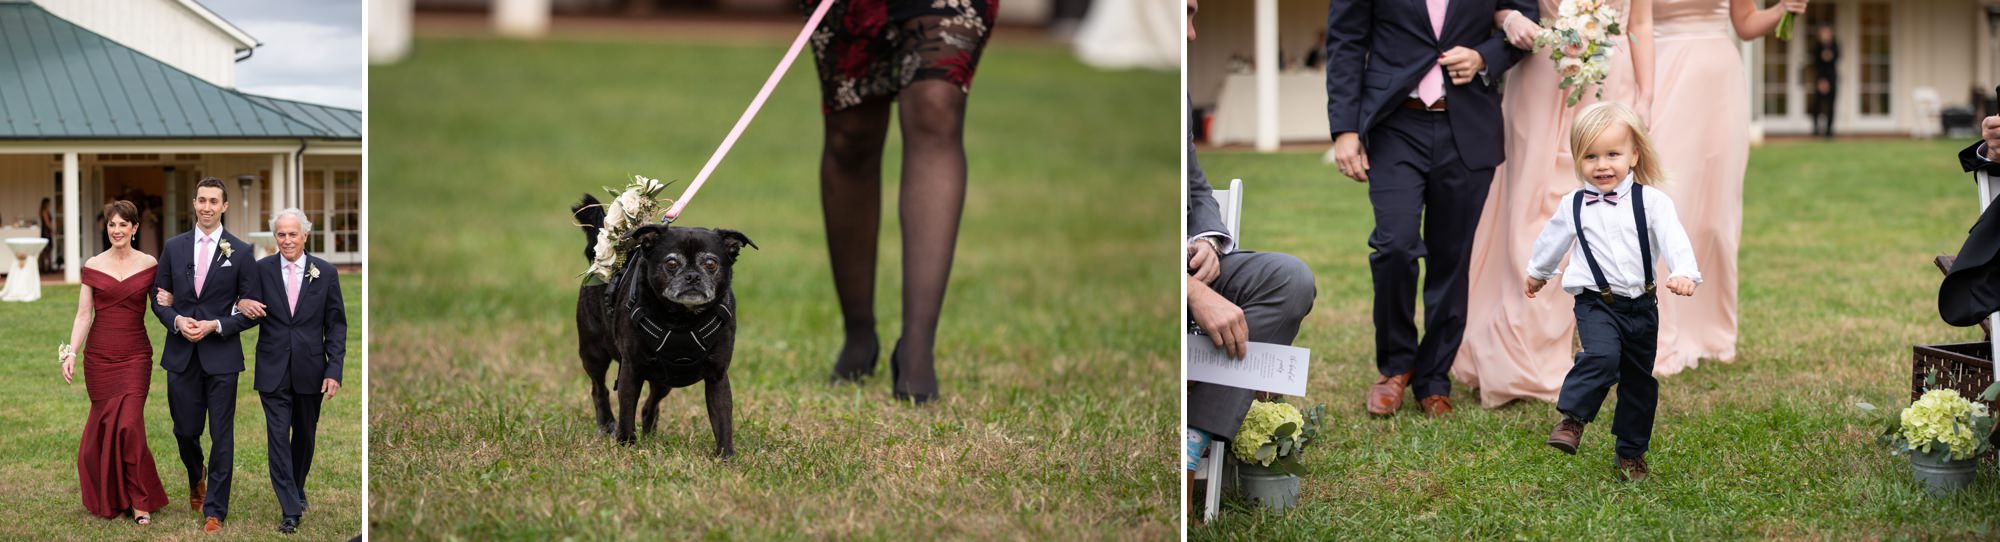 Dogs in Wedding Ceremonies